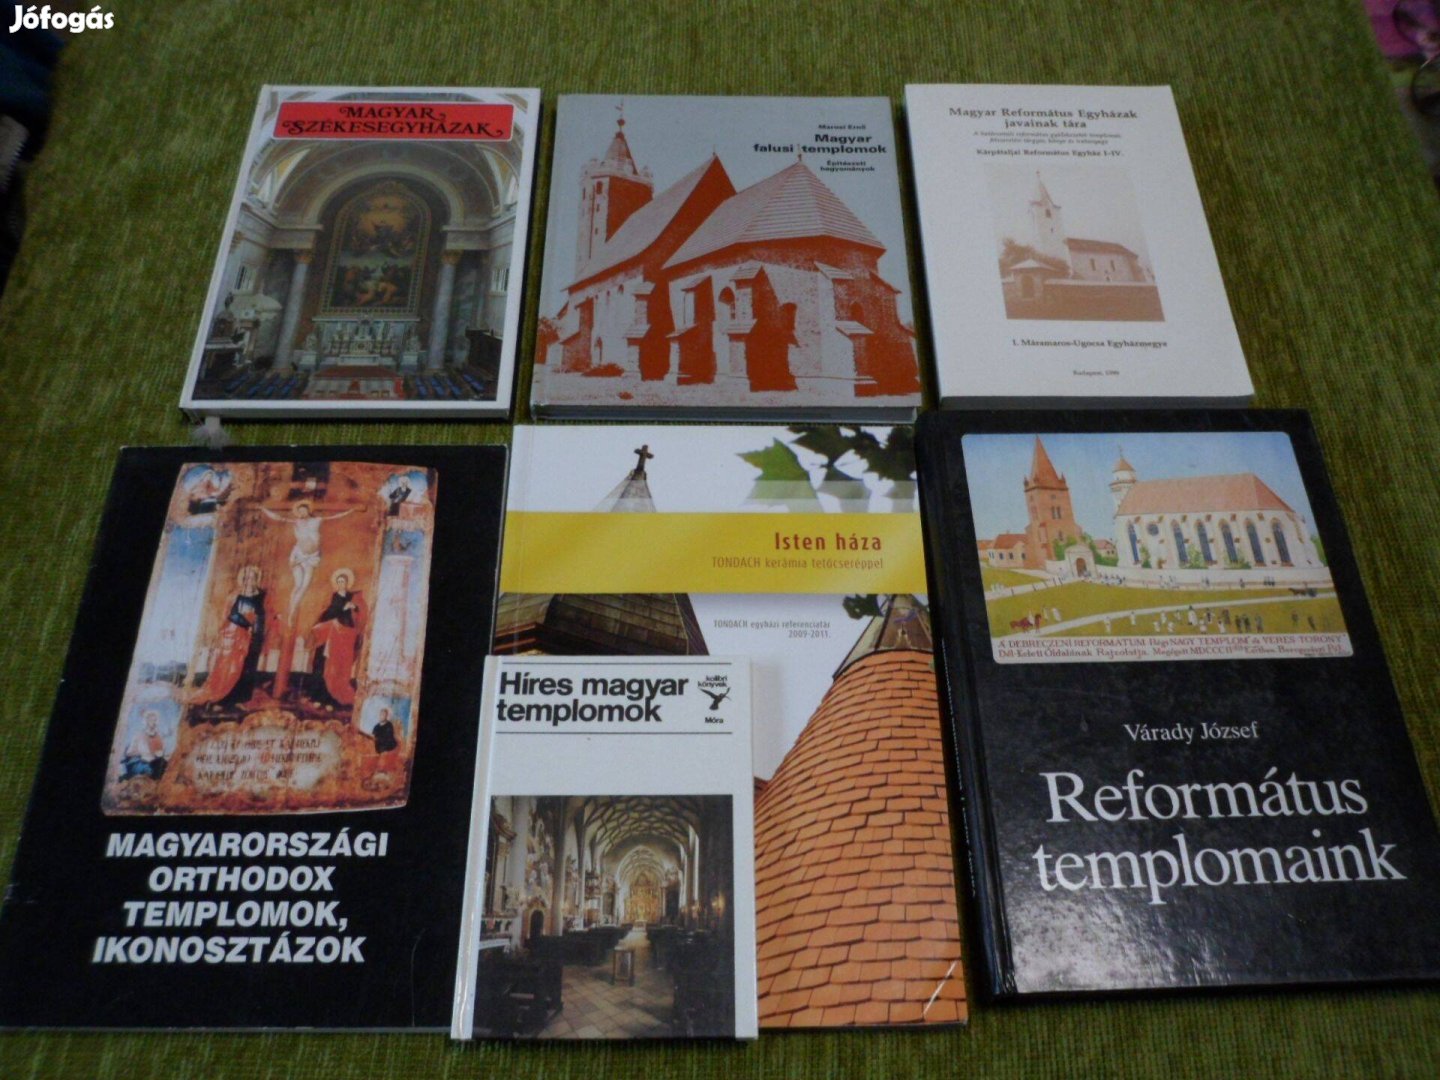 Magyar templomok könyvcsomag hét könyvből összeállítva: